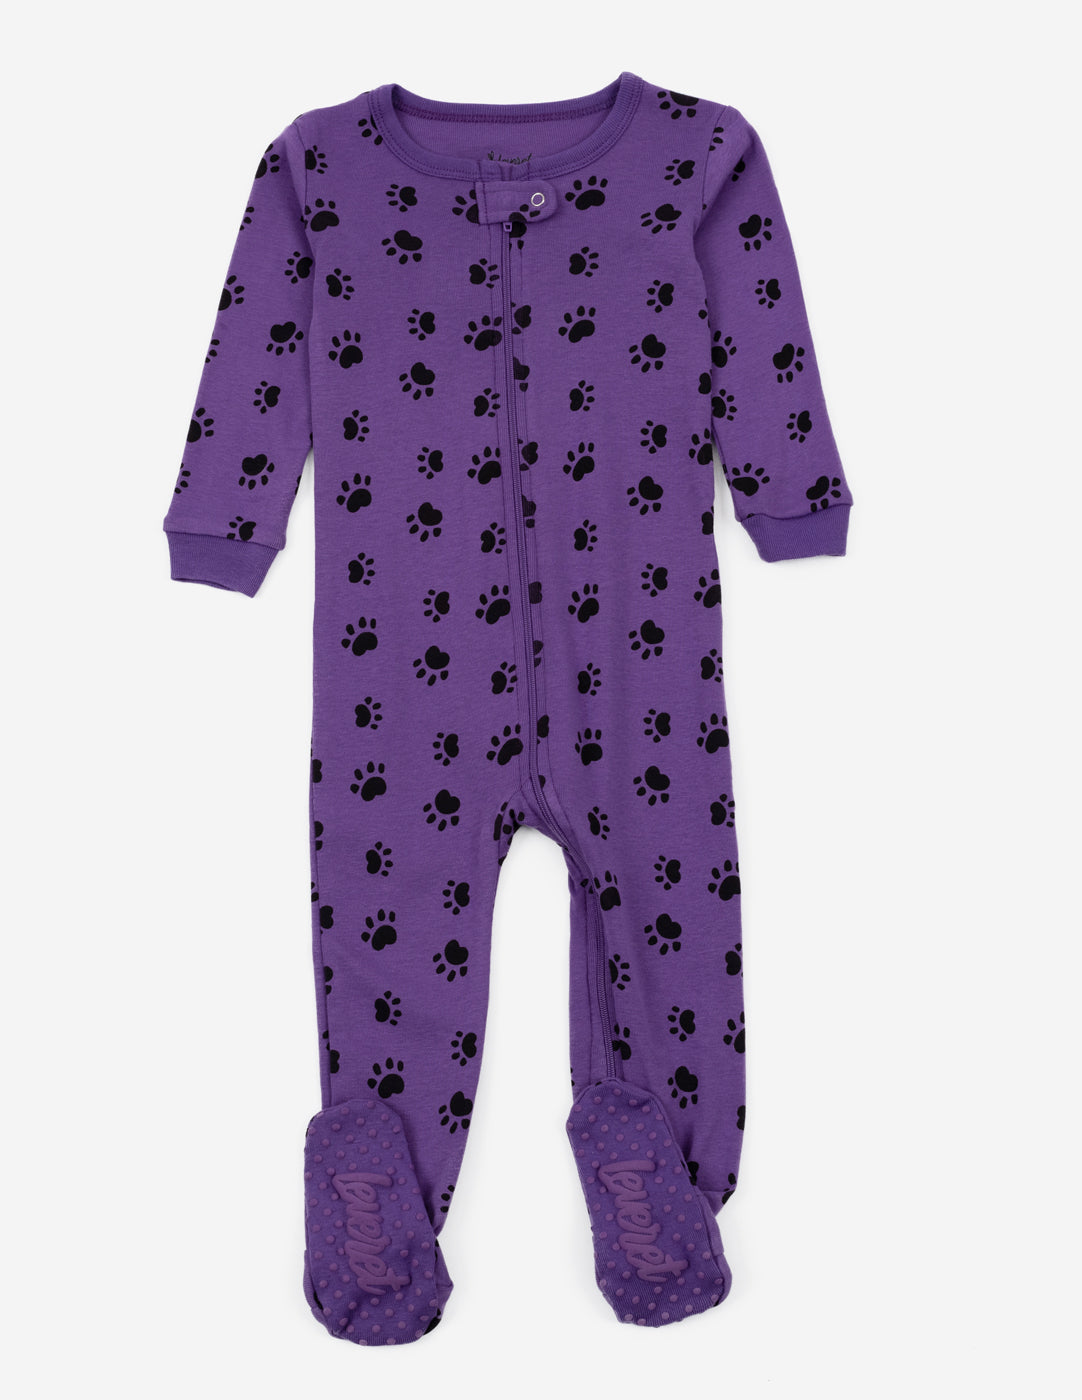 Baby Footed Paw Print Pajamas